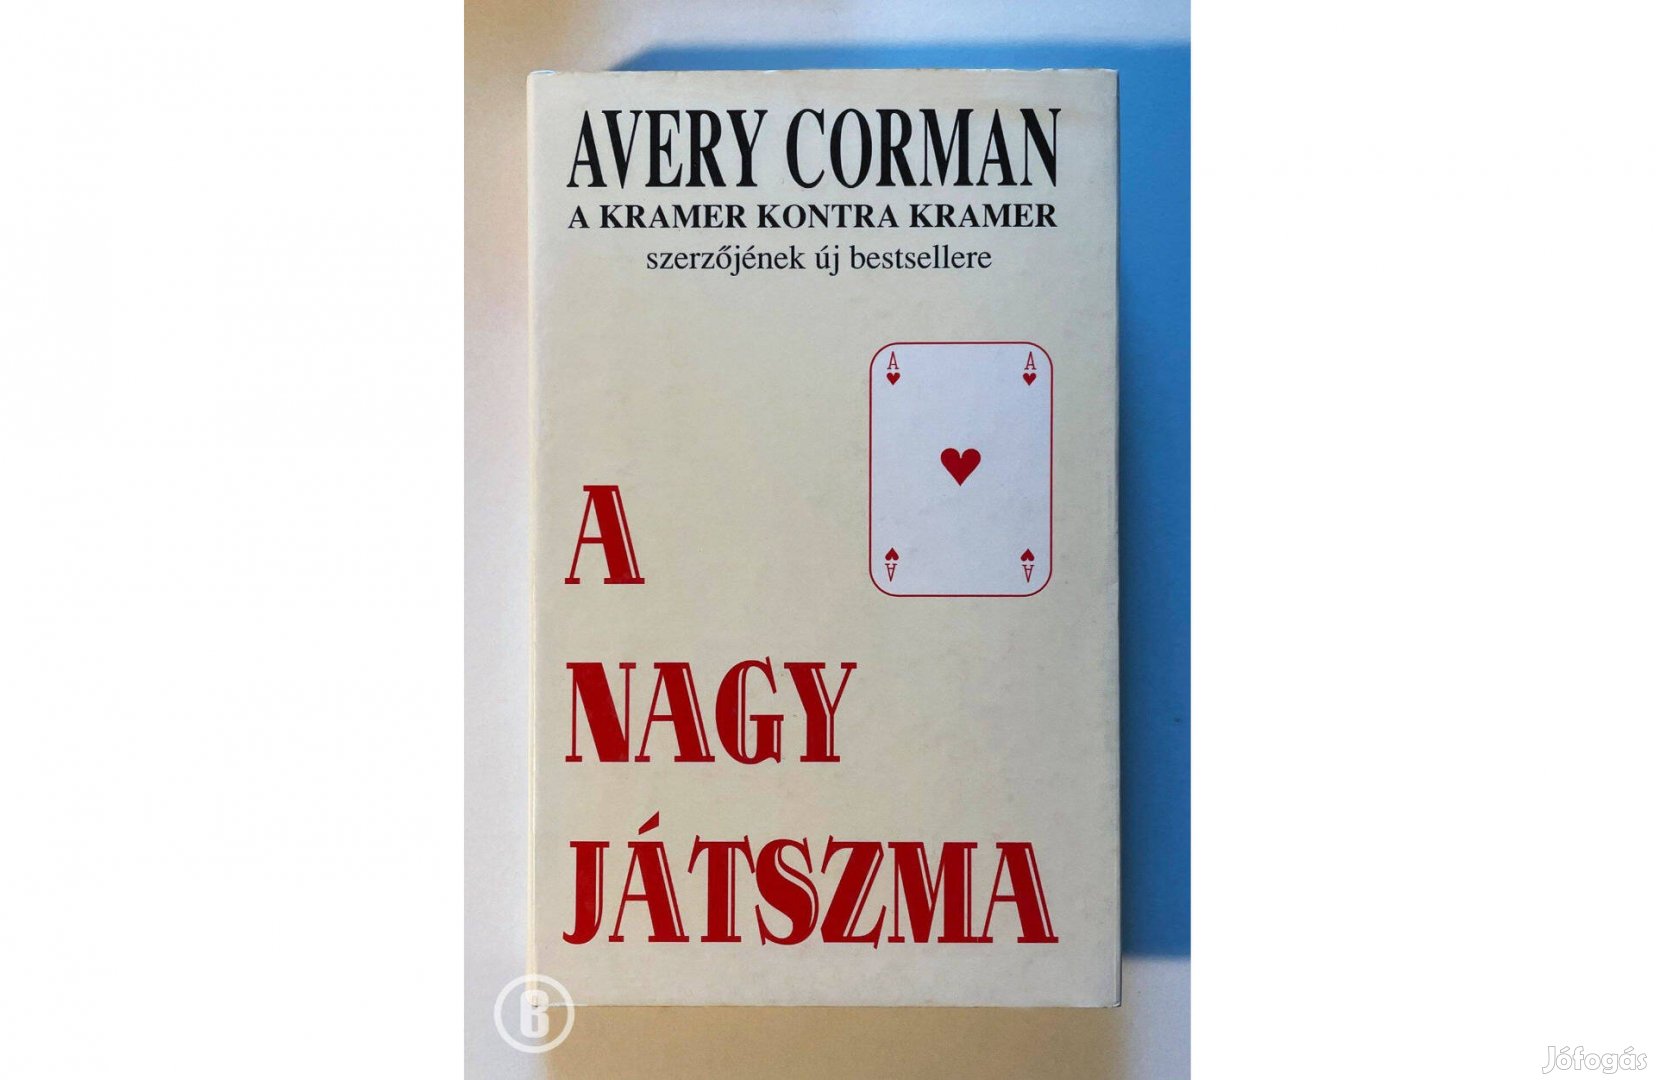 Avery Corman: A nagy játszma